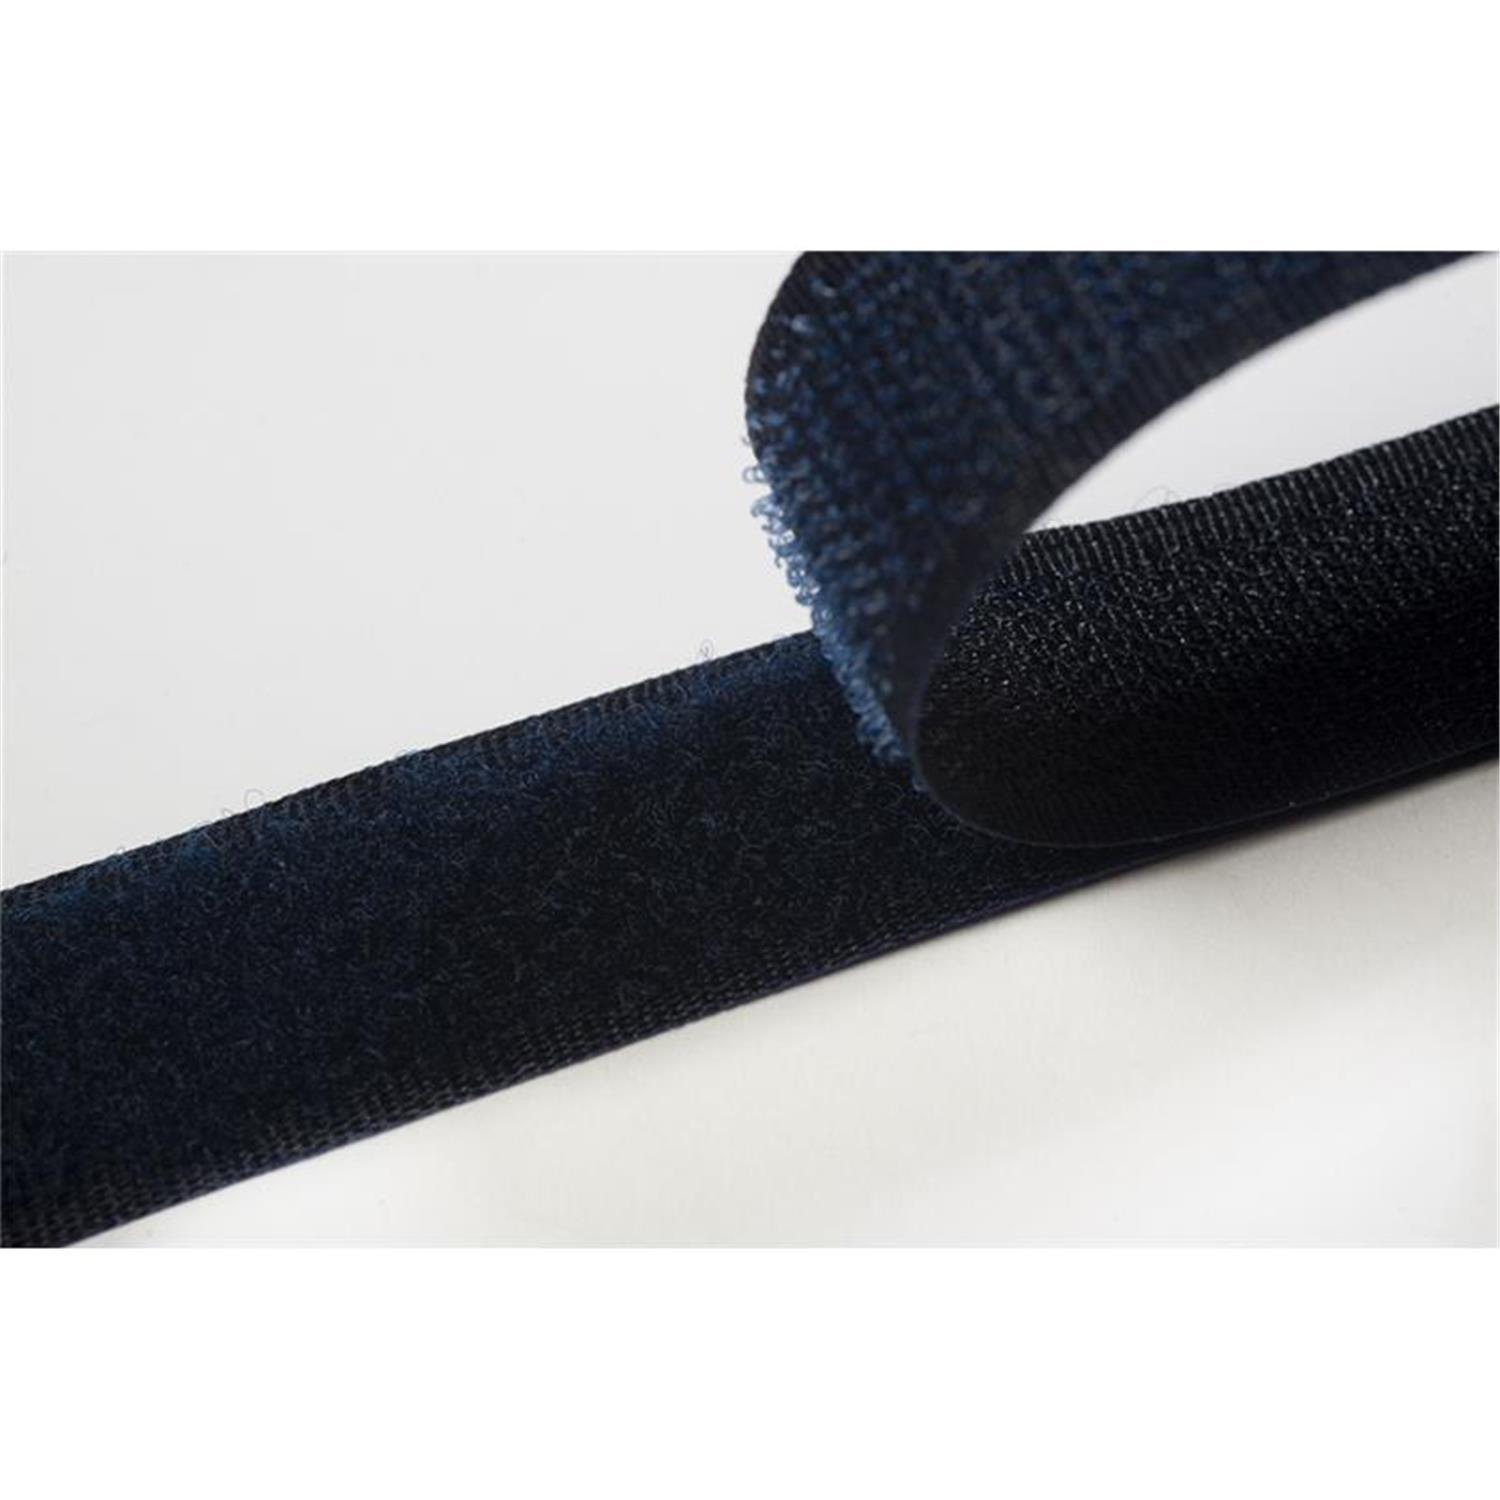 Klettband zum aufnähen, 20 mm, dunkelblau #27 4 Meter